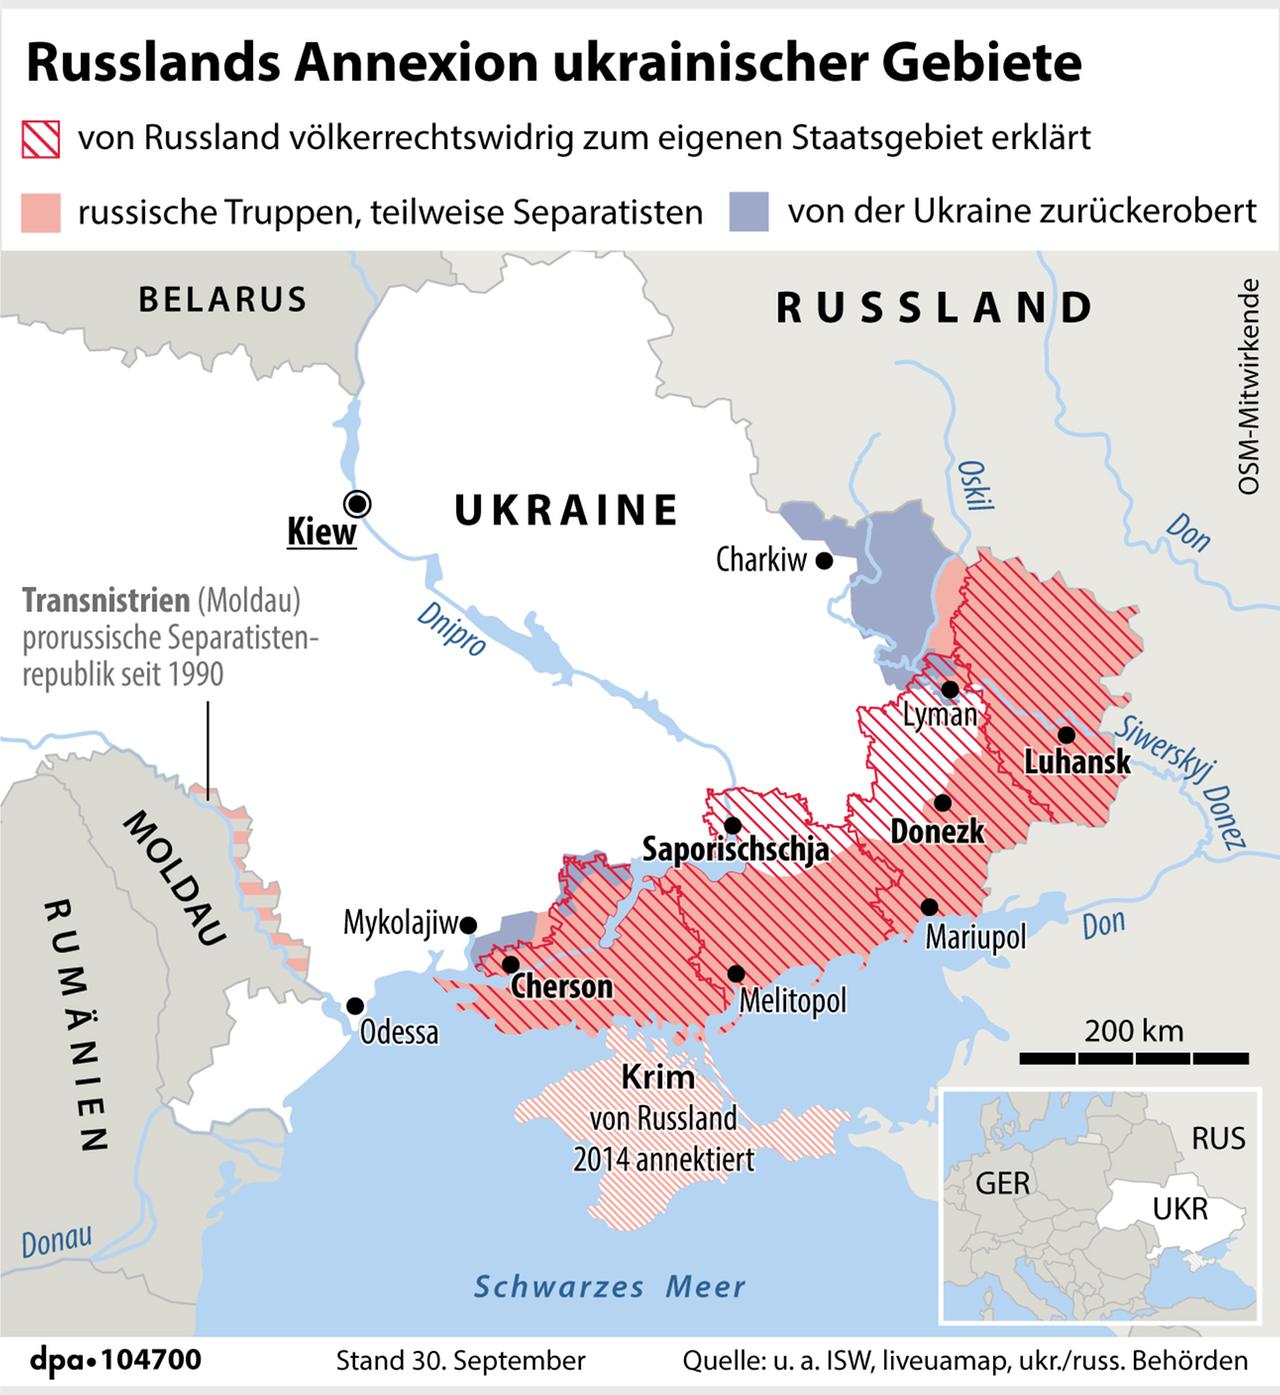 Die russisch annektierten Gebiete sind dunkelrot/hellrot schraffiert. Cherson ist etwa in der Bildmitte.